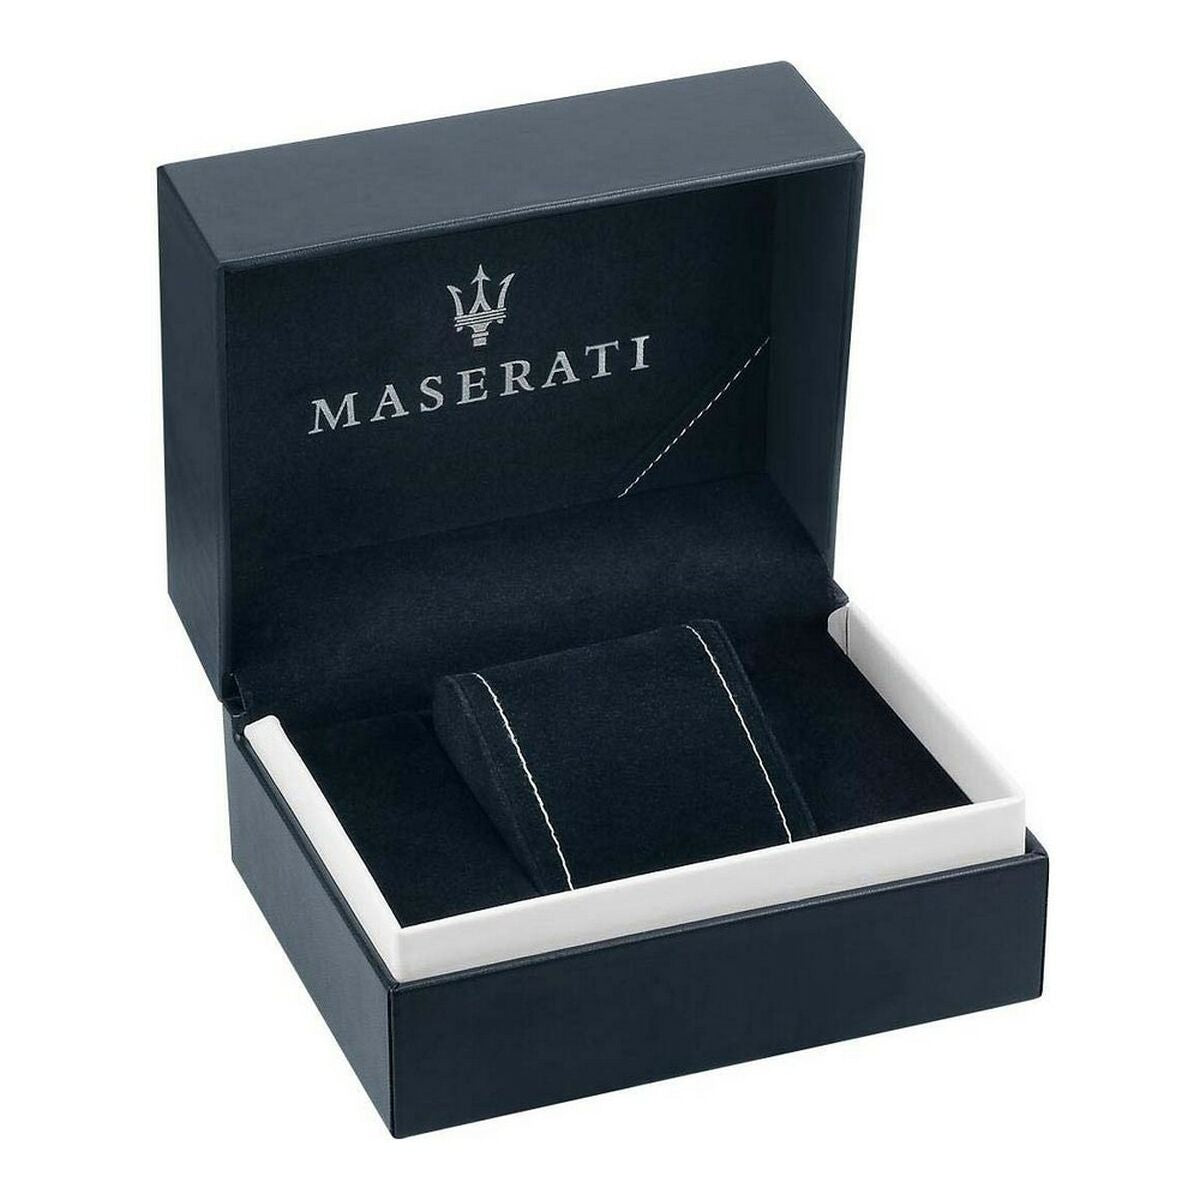 Kaufe Herrenuhr Maserati R8873644001 (Ø 45 mm) bei AWK Flagship um € 209.00